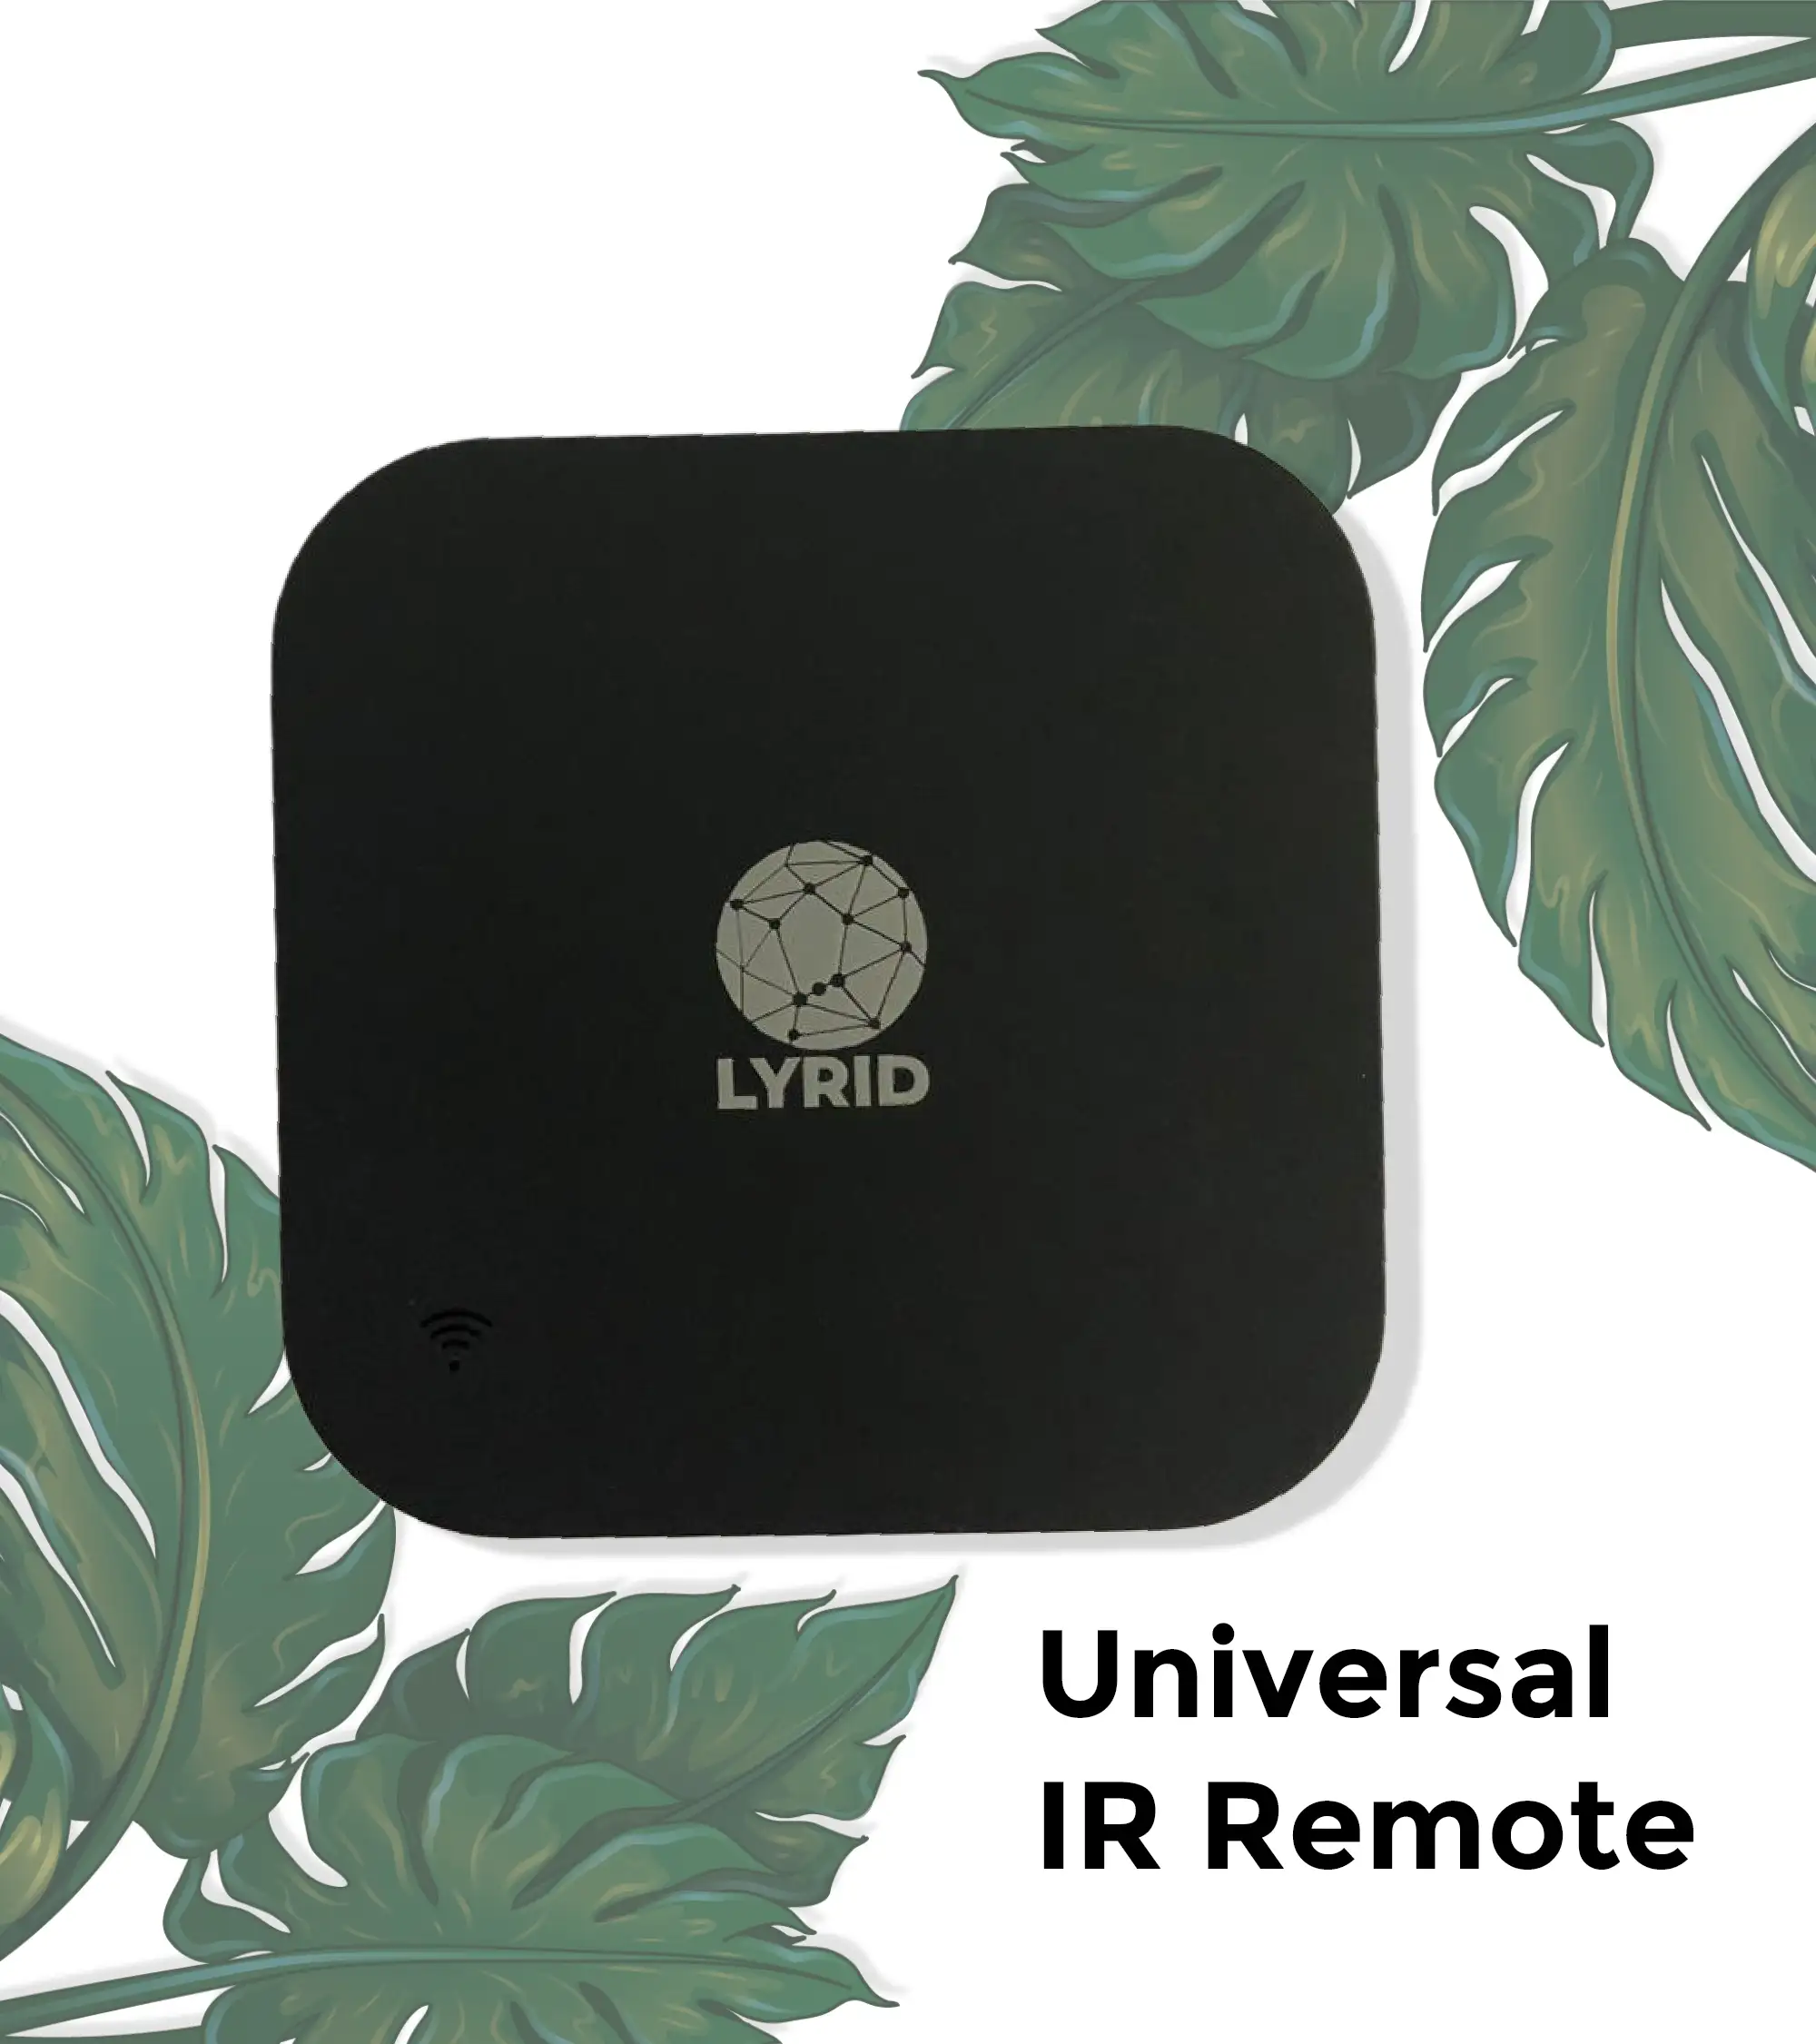 Universal IR Remote 1 1